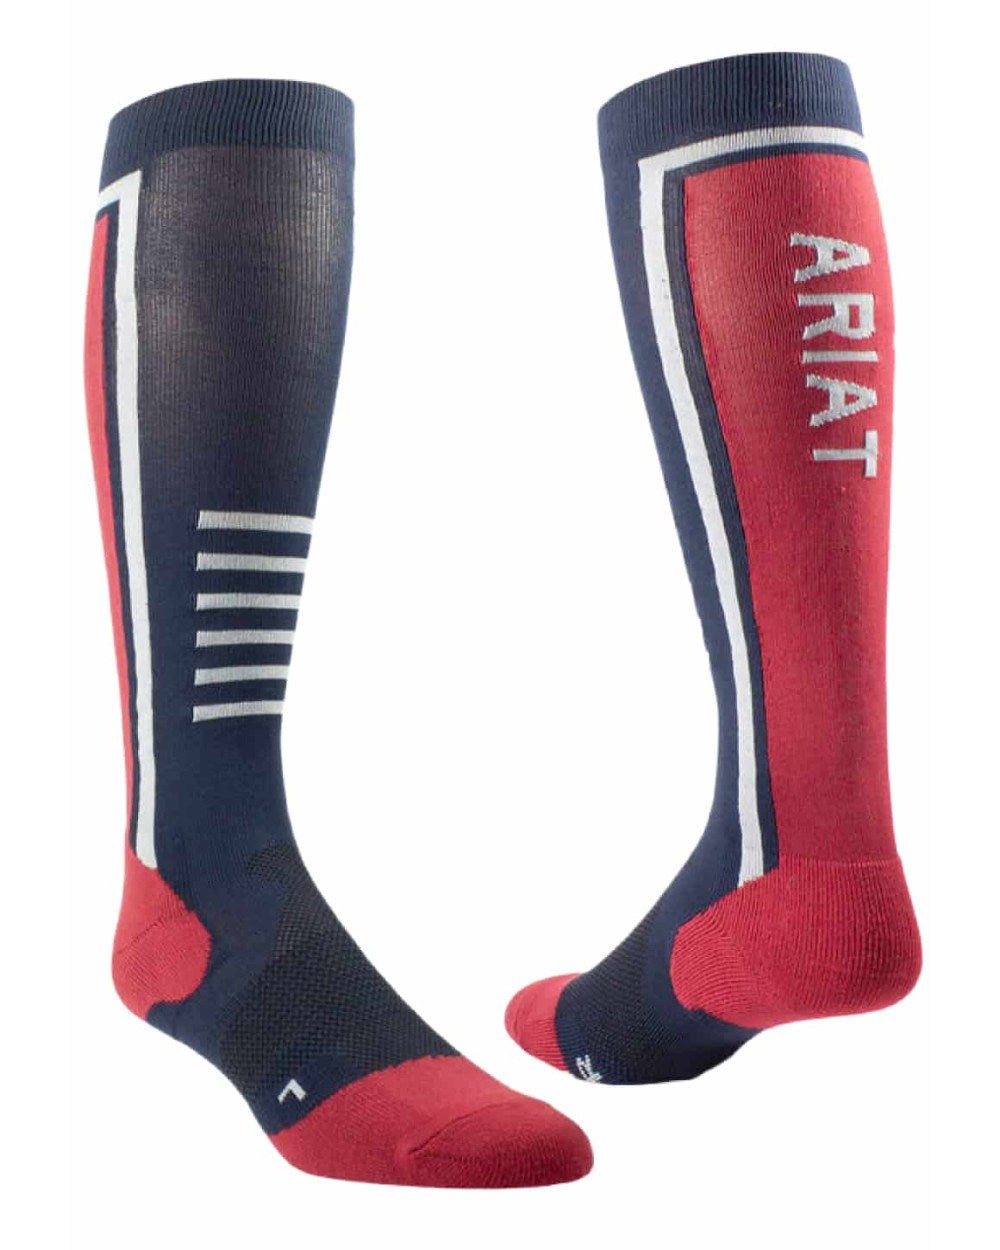 Navy/Red Coloured AriatTEK Slimline Performance Socks On A White Background 